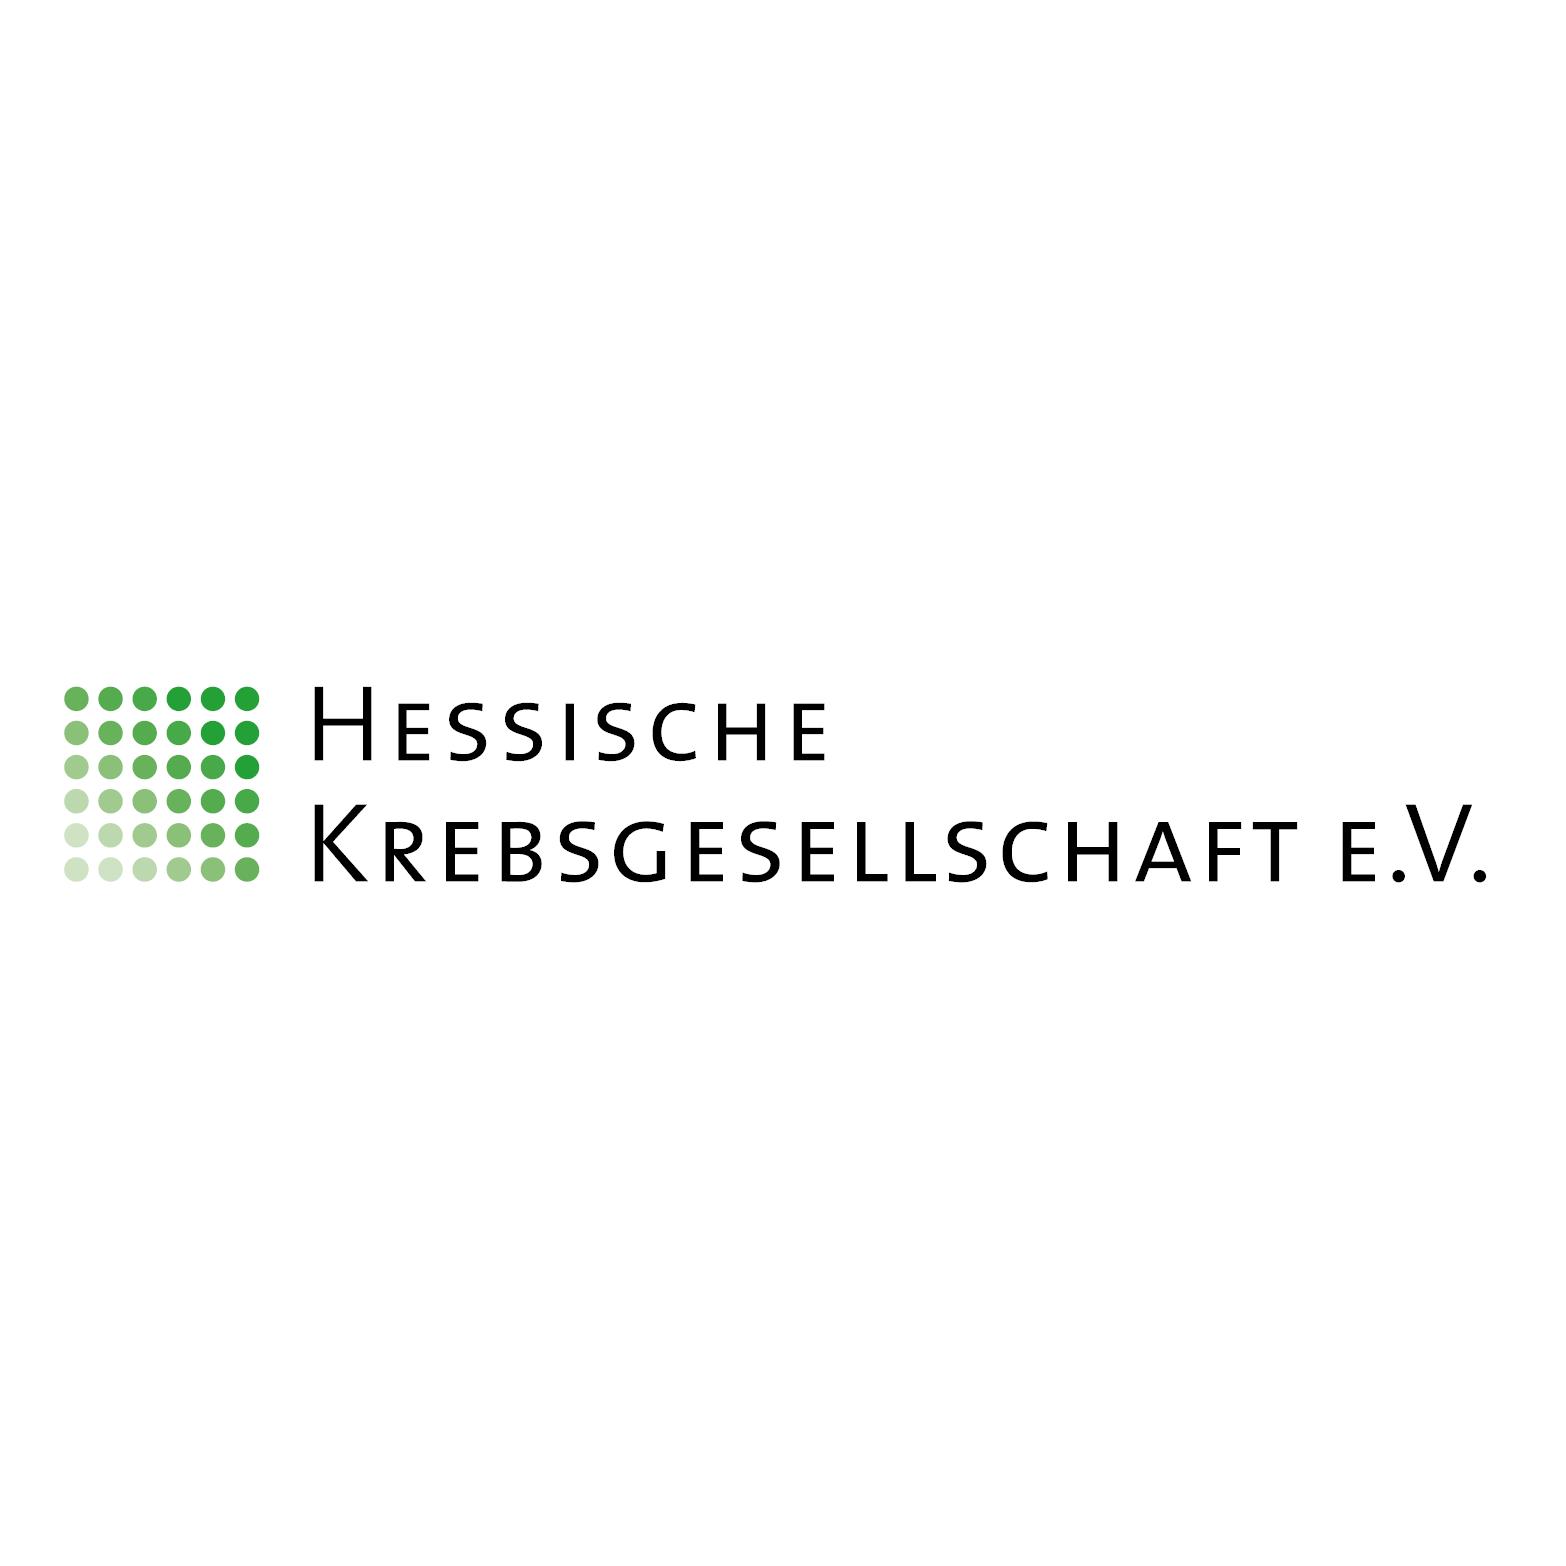  Psychosoziale Krebsberatungsstelle Korbach | Hessische Krebsgesellschaft e.V. 